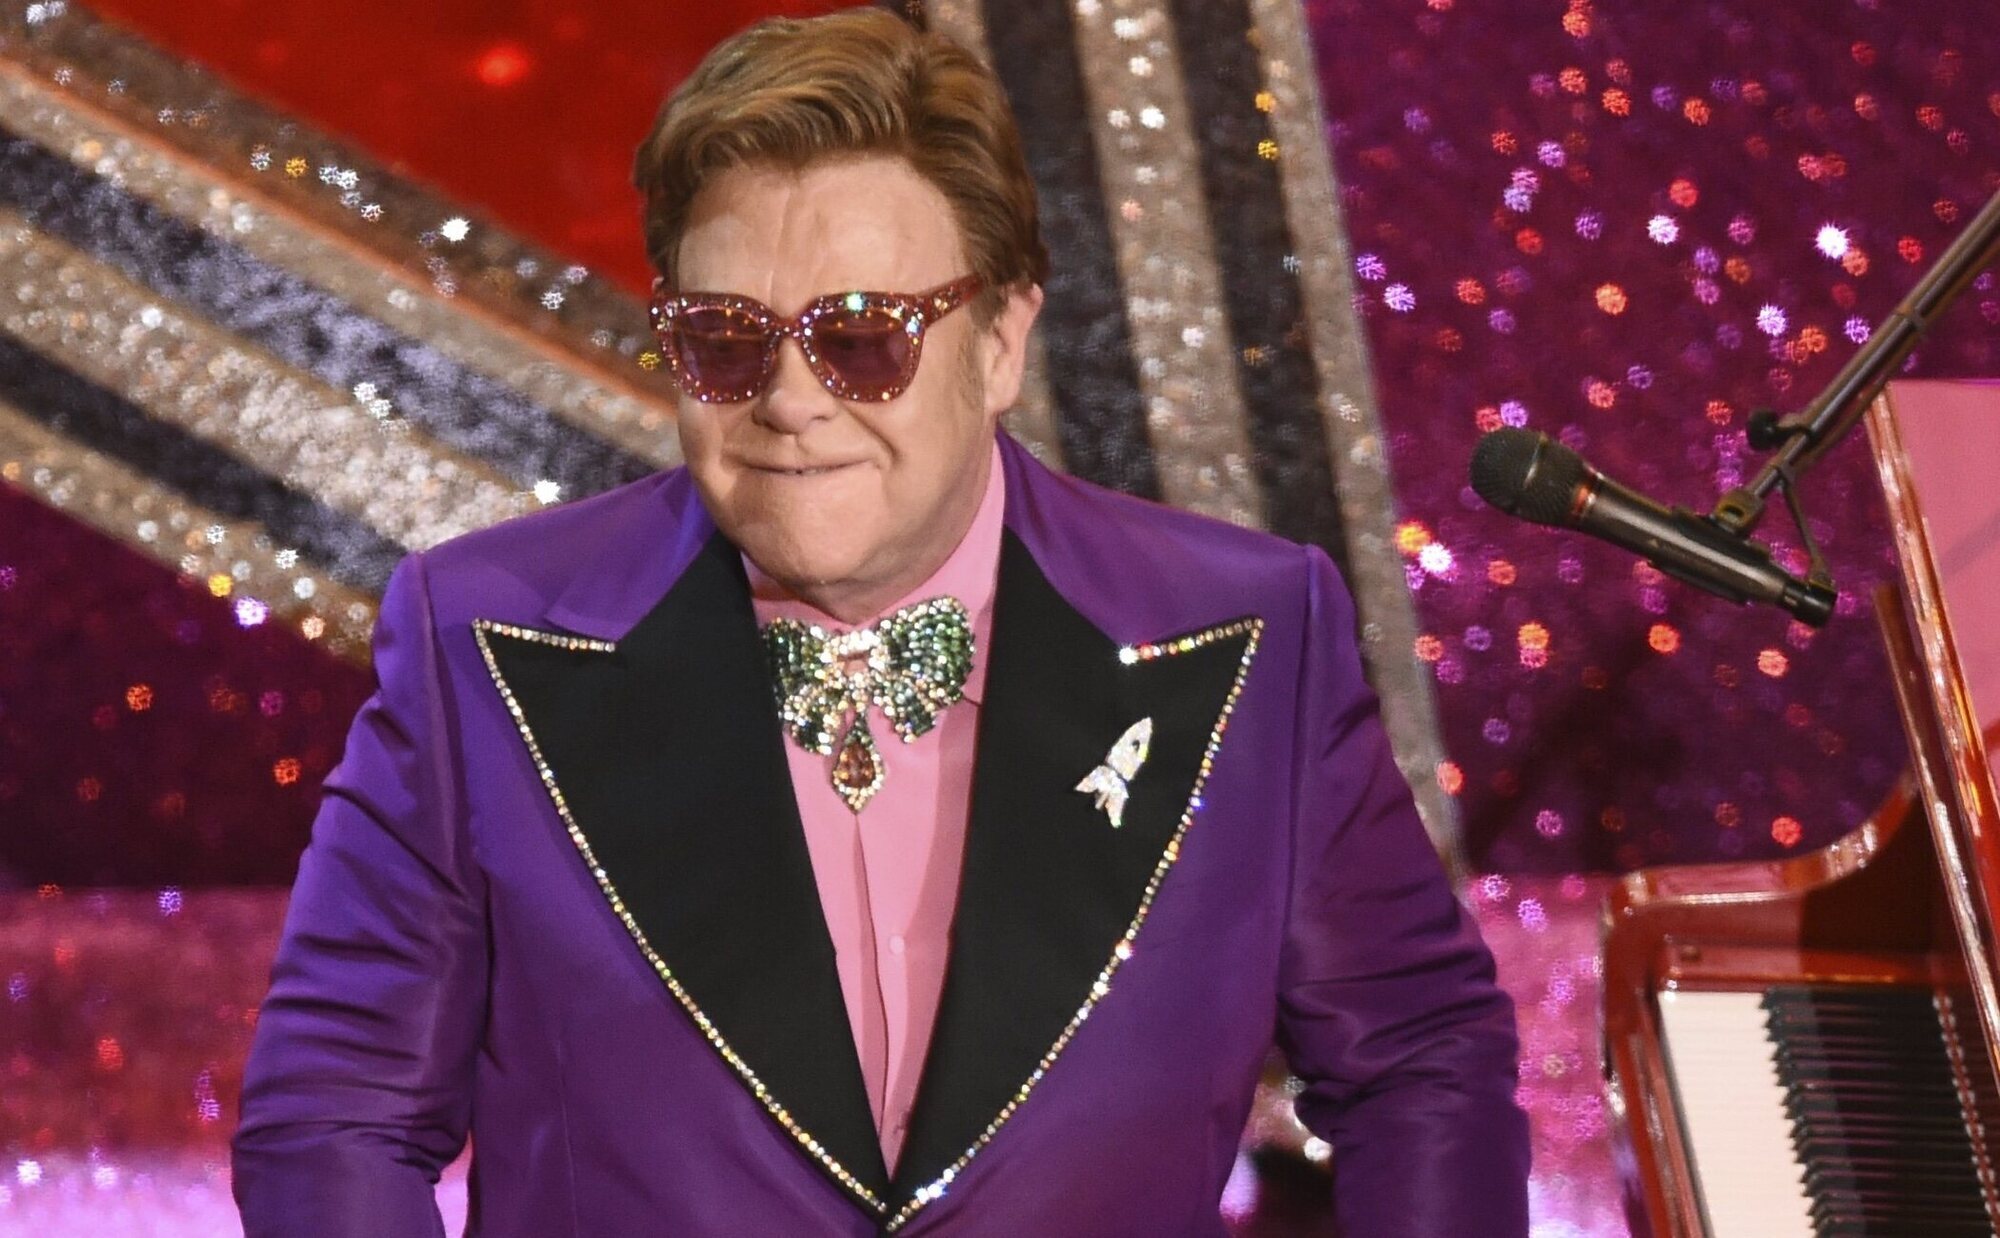 La tremenda caída que ha llevado a Elton John a ingresar en el hospital en Niza